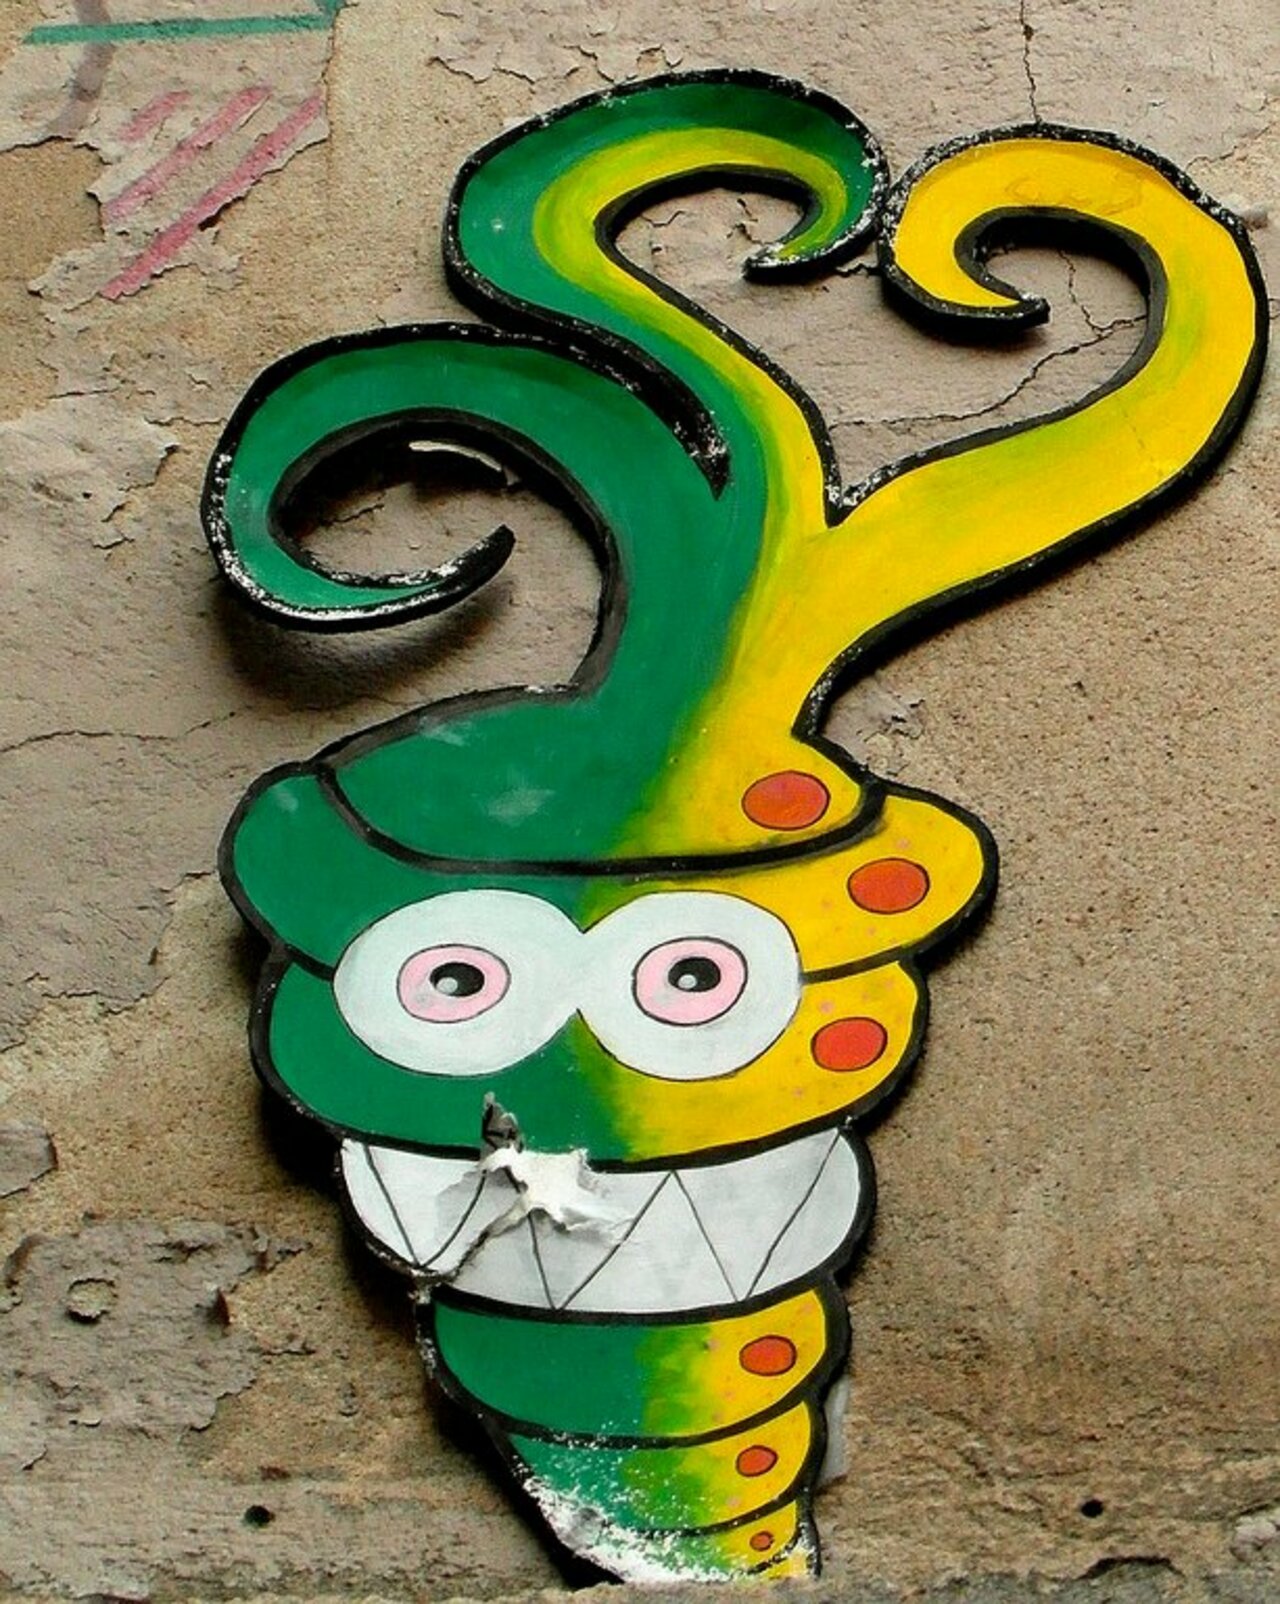 Street Art by anonymous in # http://www.urbacolors.com #art #mural #graffiti #streetart https://t.co/sCtNB9n4fF